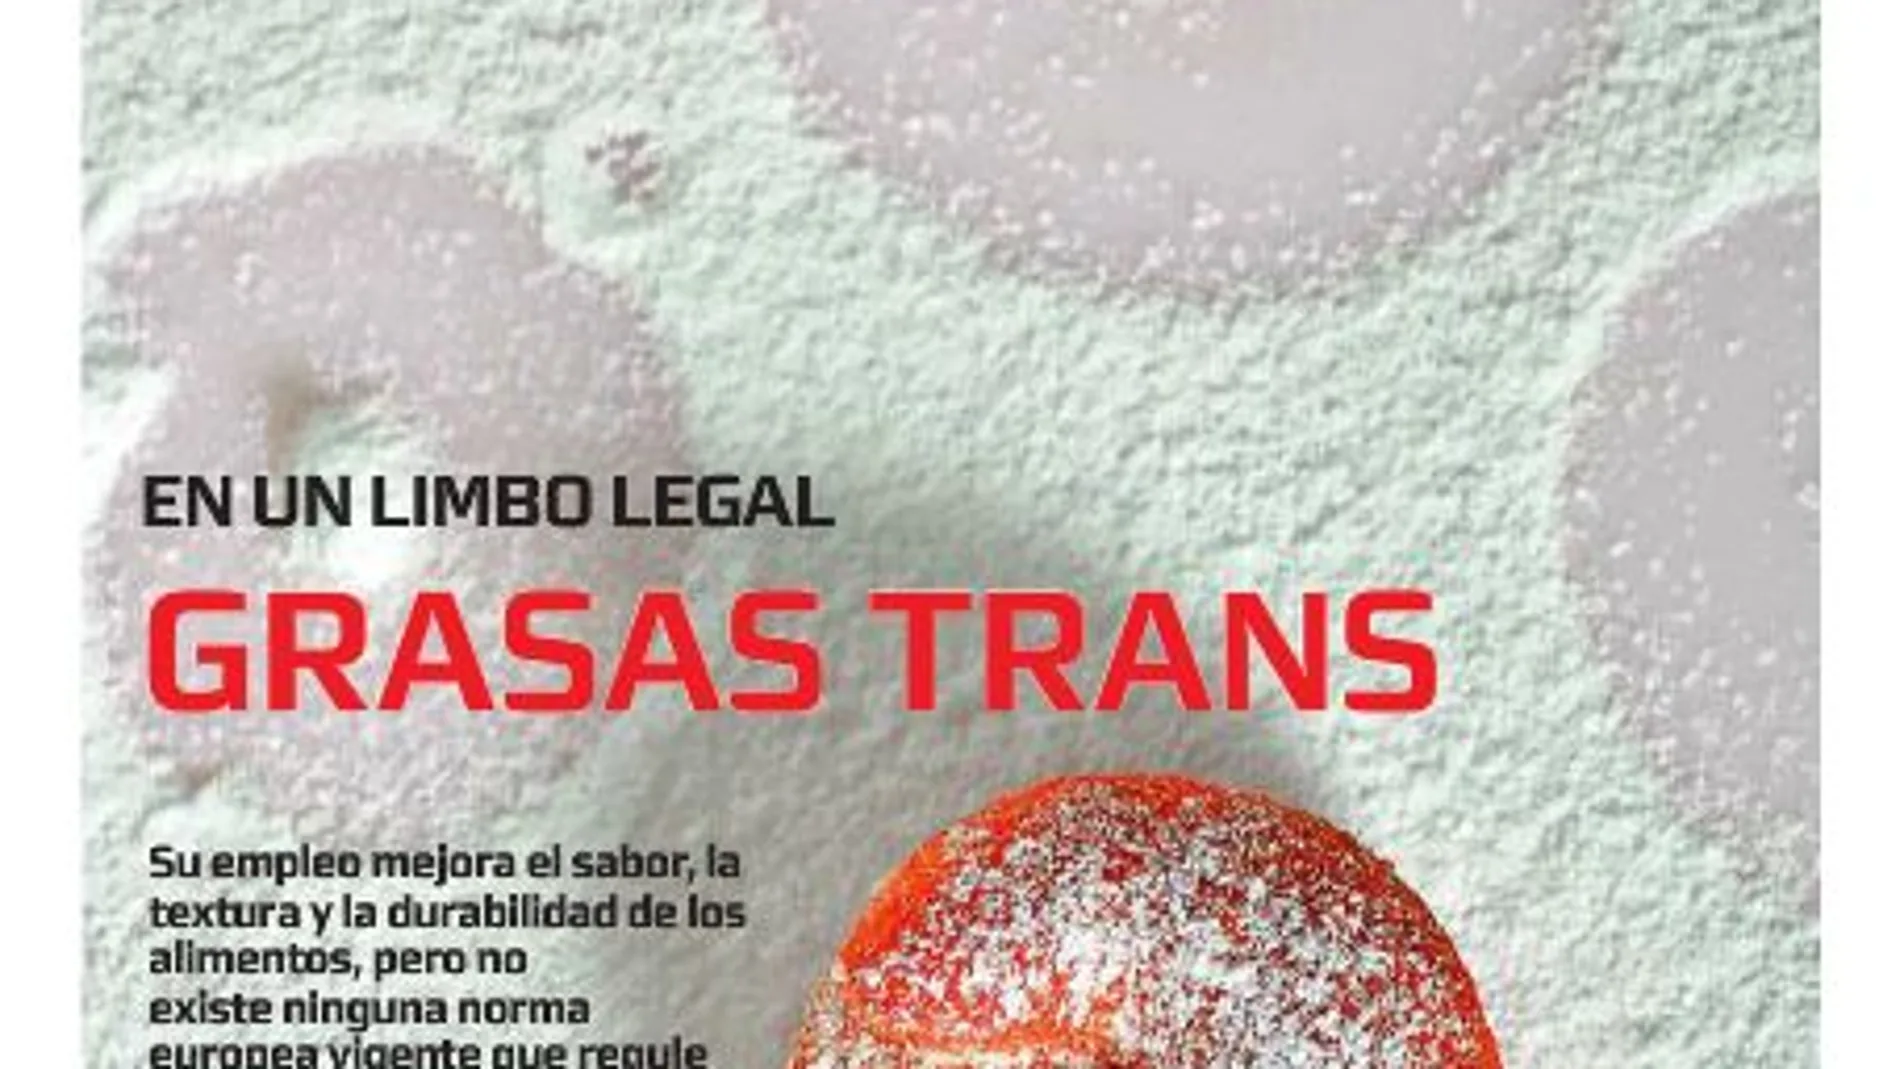 Grasas trans: en el limbo legal